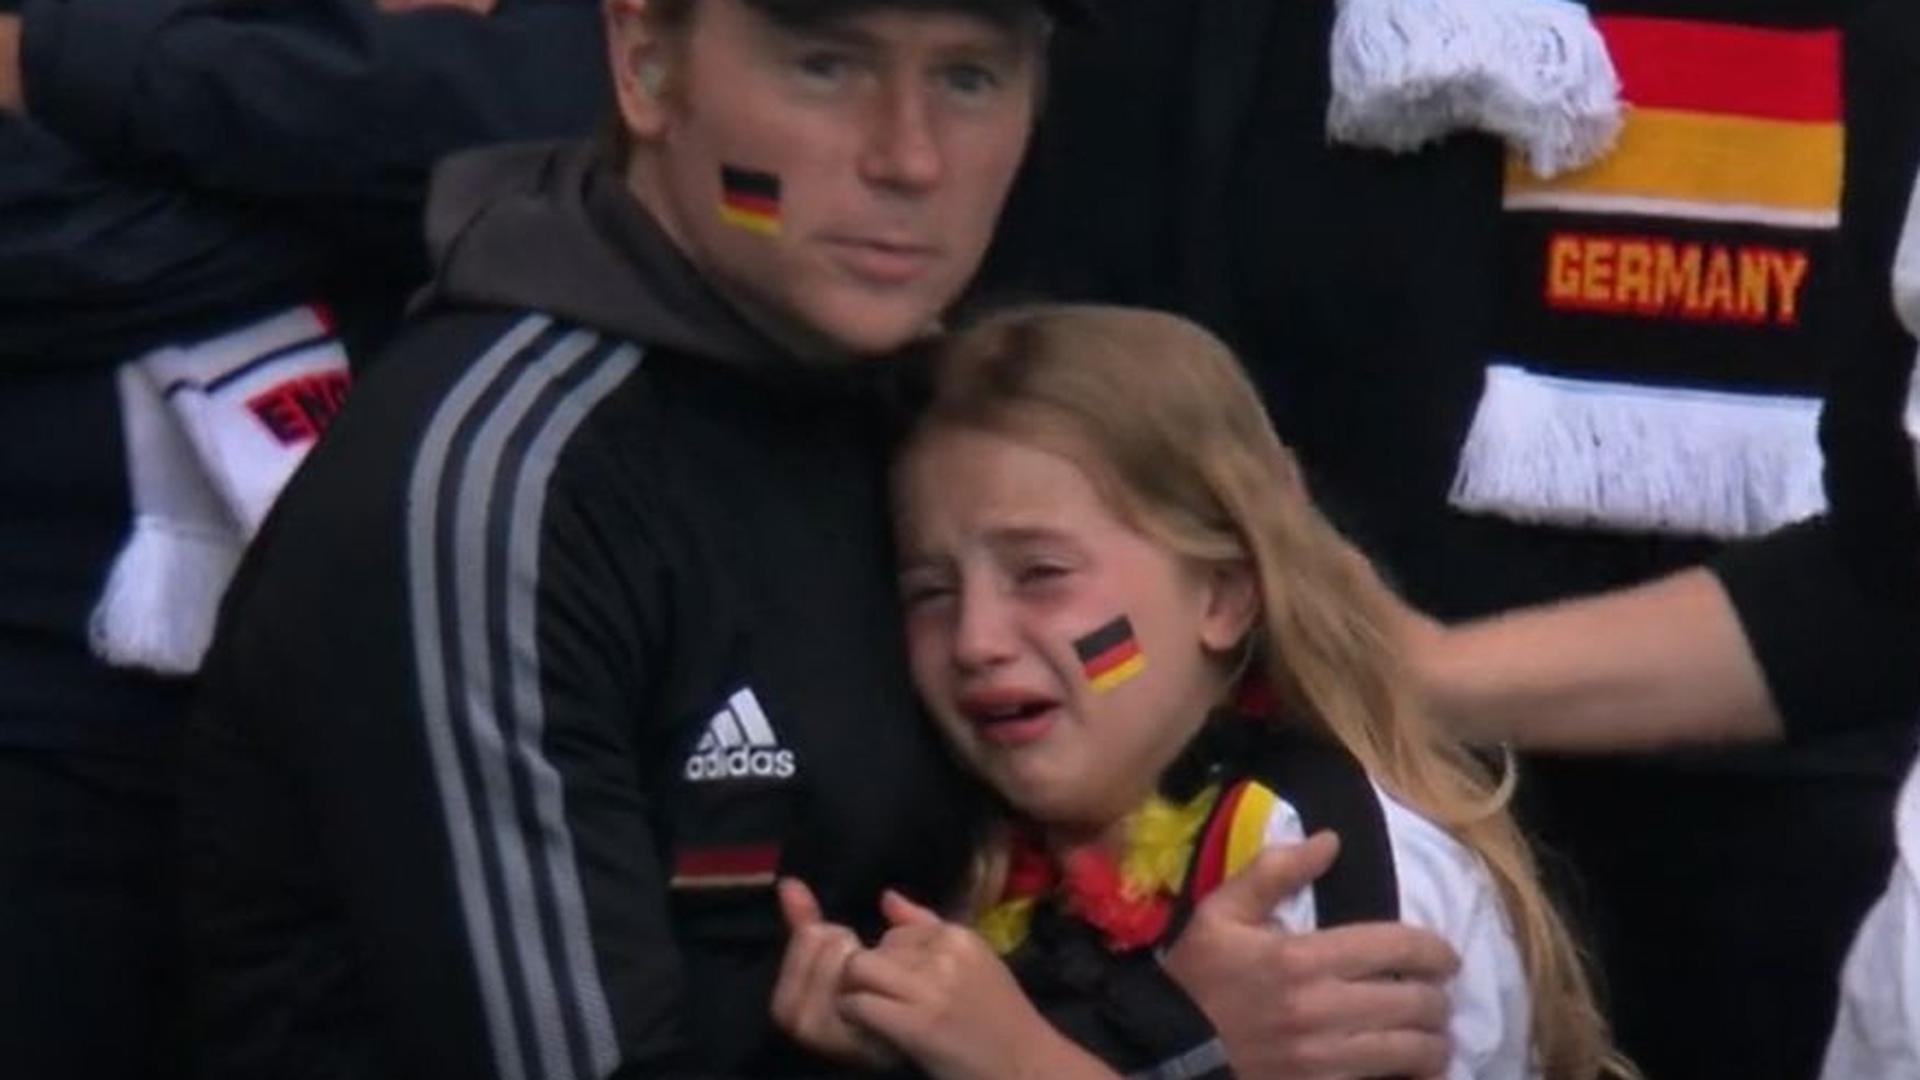 Trauer eines kleinen Fußballfans: Das Bild aus dem Spiel Deutschland gegen England Im Wembley-Stadion weckte nicht bei allen Menschen Mitgefühl mit dem bitter enttäuschten Mädchen und ihrem Vater auf der Zuschauertribüne: In den sozialen Netzwerken gab es auch hasserfüllte Kommentare.